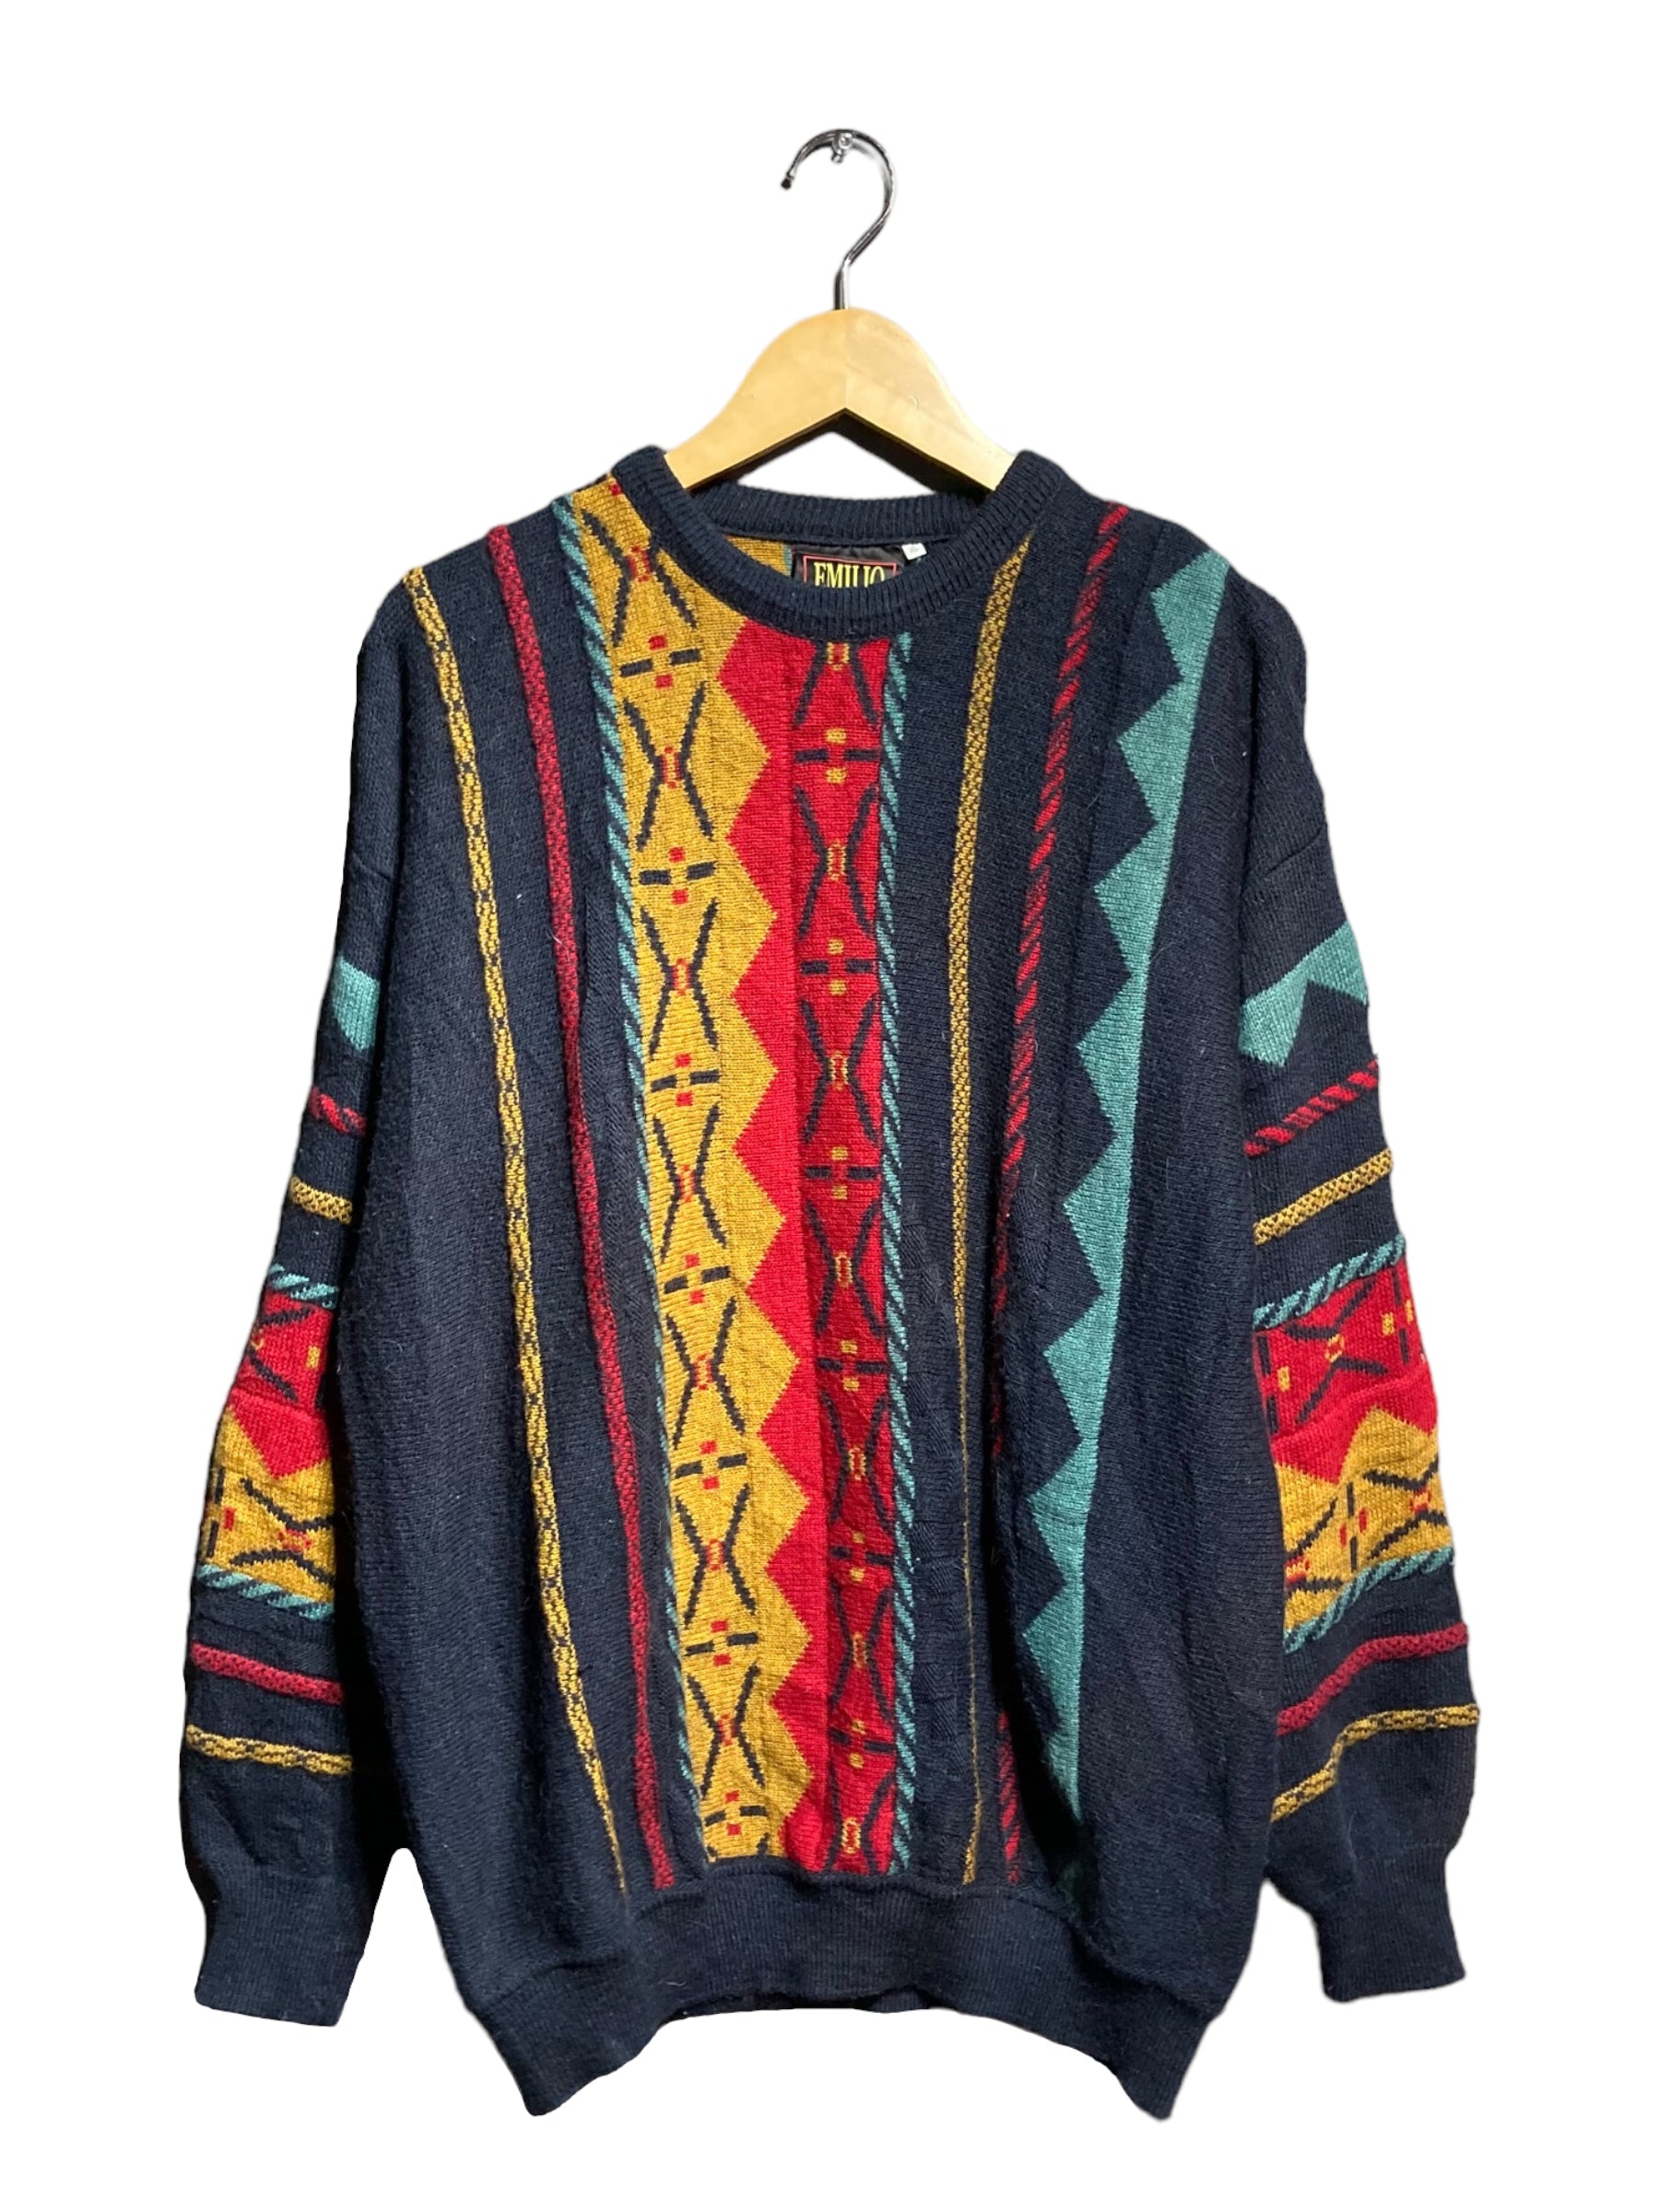 EMILIO knit sweater ウールニット 3Dニット セーター – STORAGE UNLIMITED